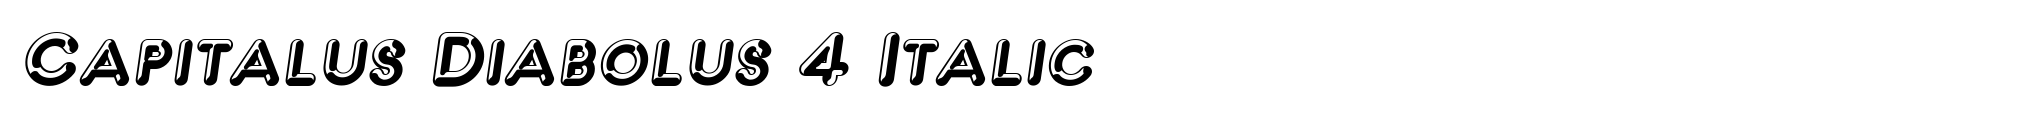 Capitalus Diabolus 4 Italic image